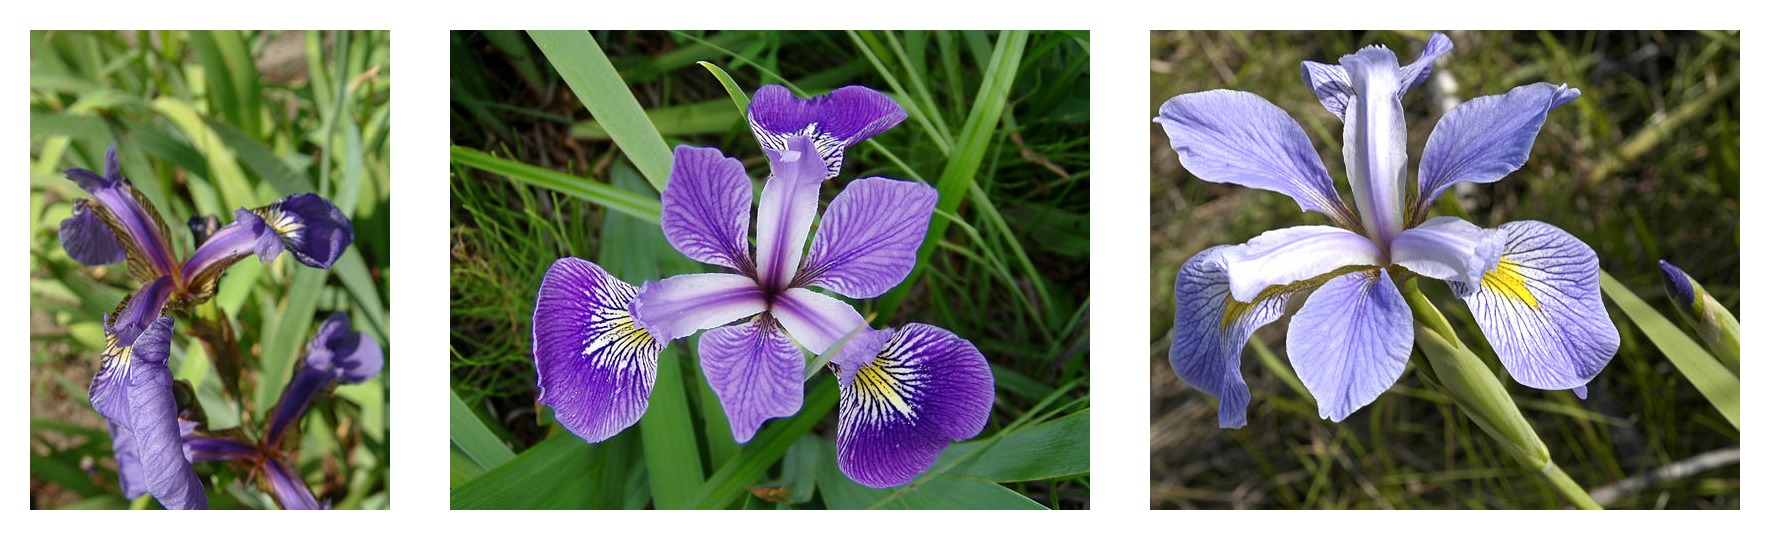 Comparación de la geometría de los pétalos de tres especies de iris: Iris setosa, Iris virginica e Iris versicolor